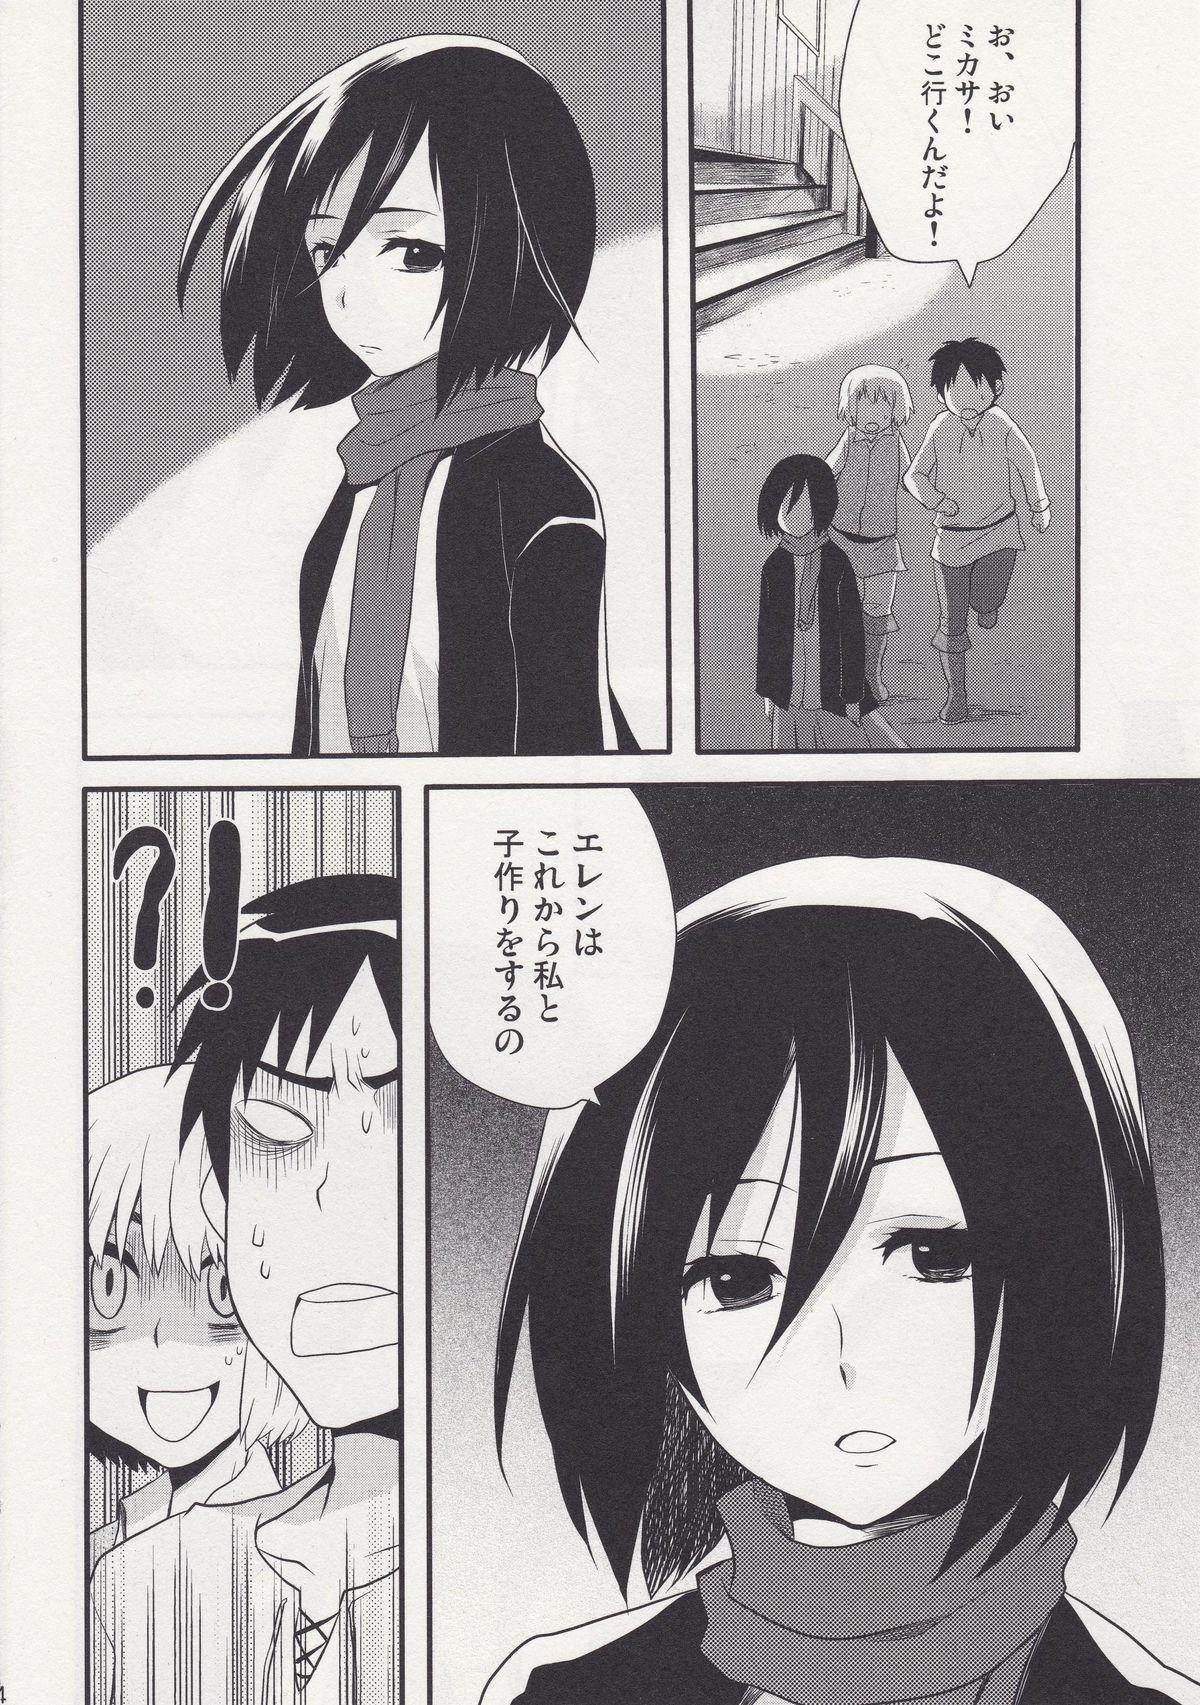 Three Some Watashi no Eren - Shingeki no kyojin Nylon - Page 4